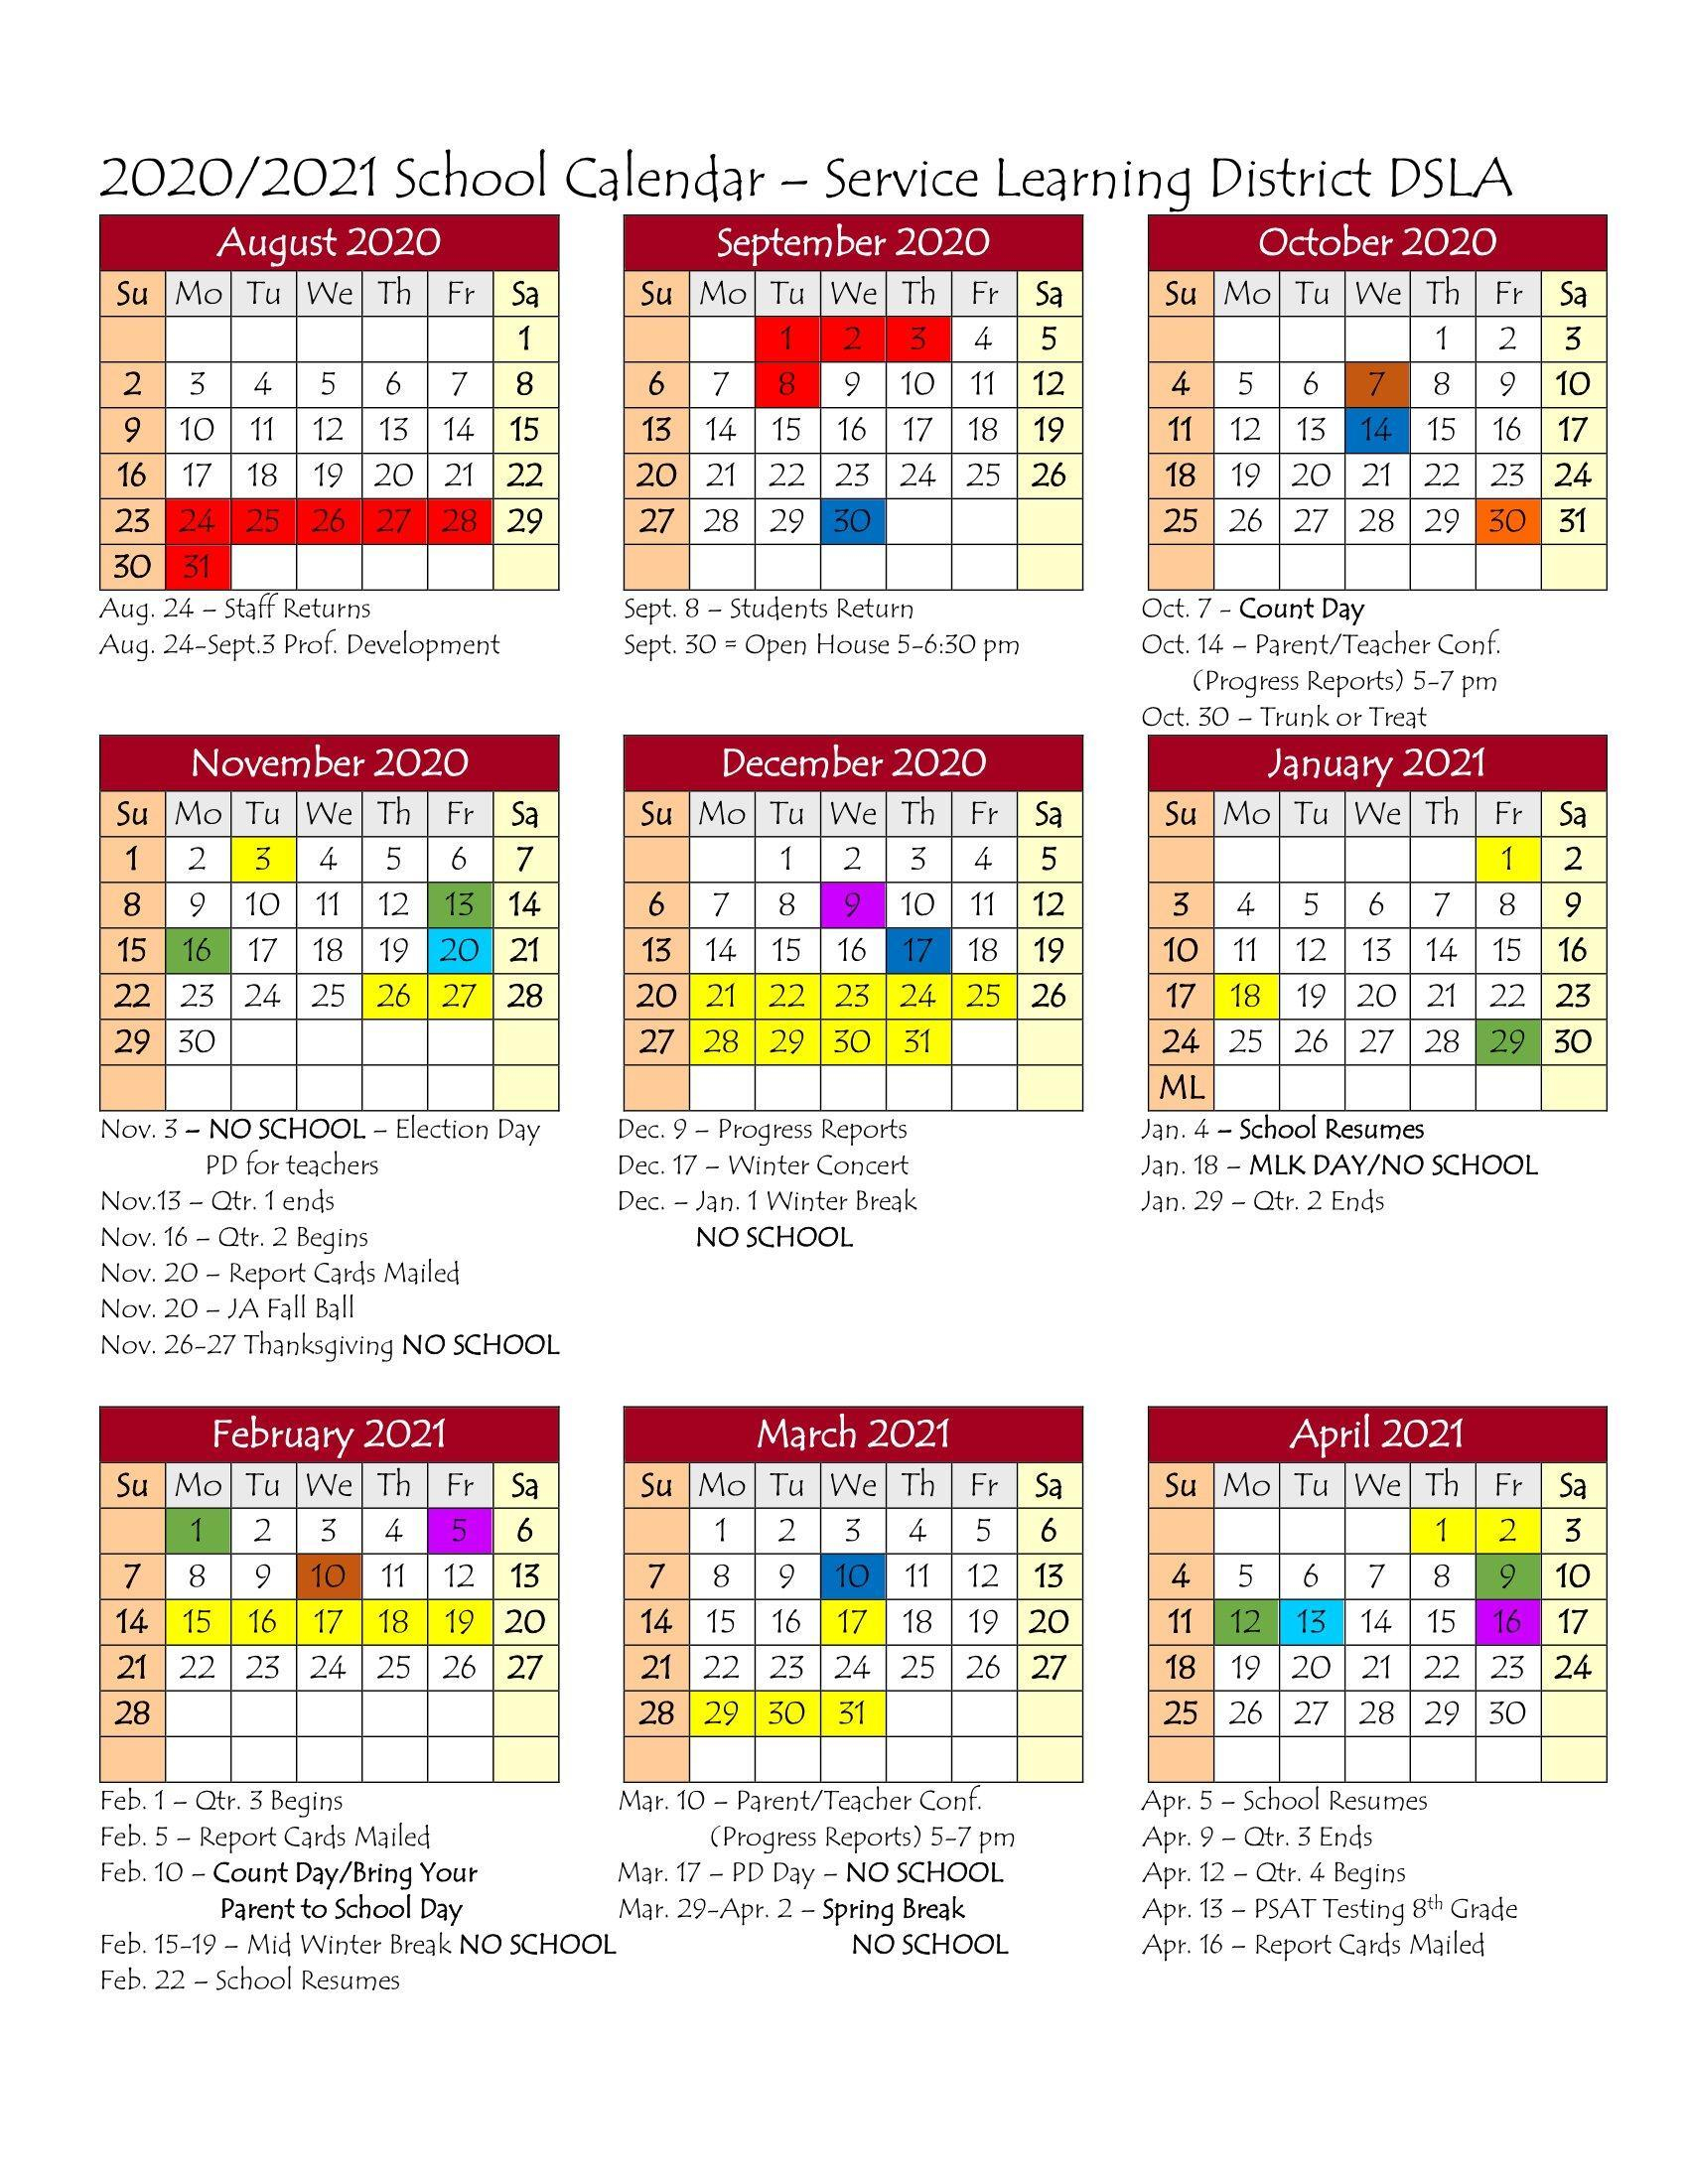 Umich Spring 2021 Calendar